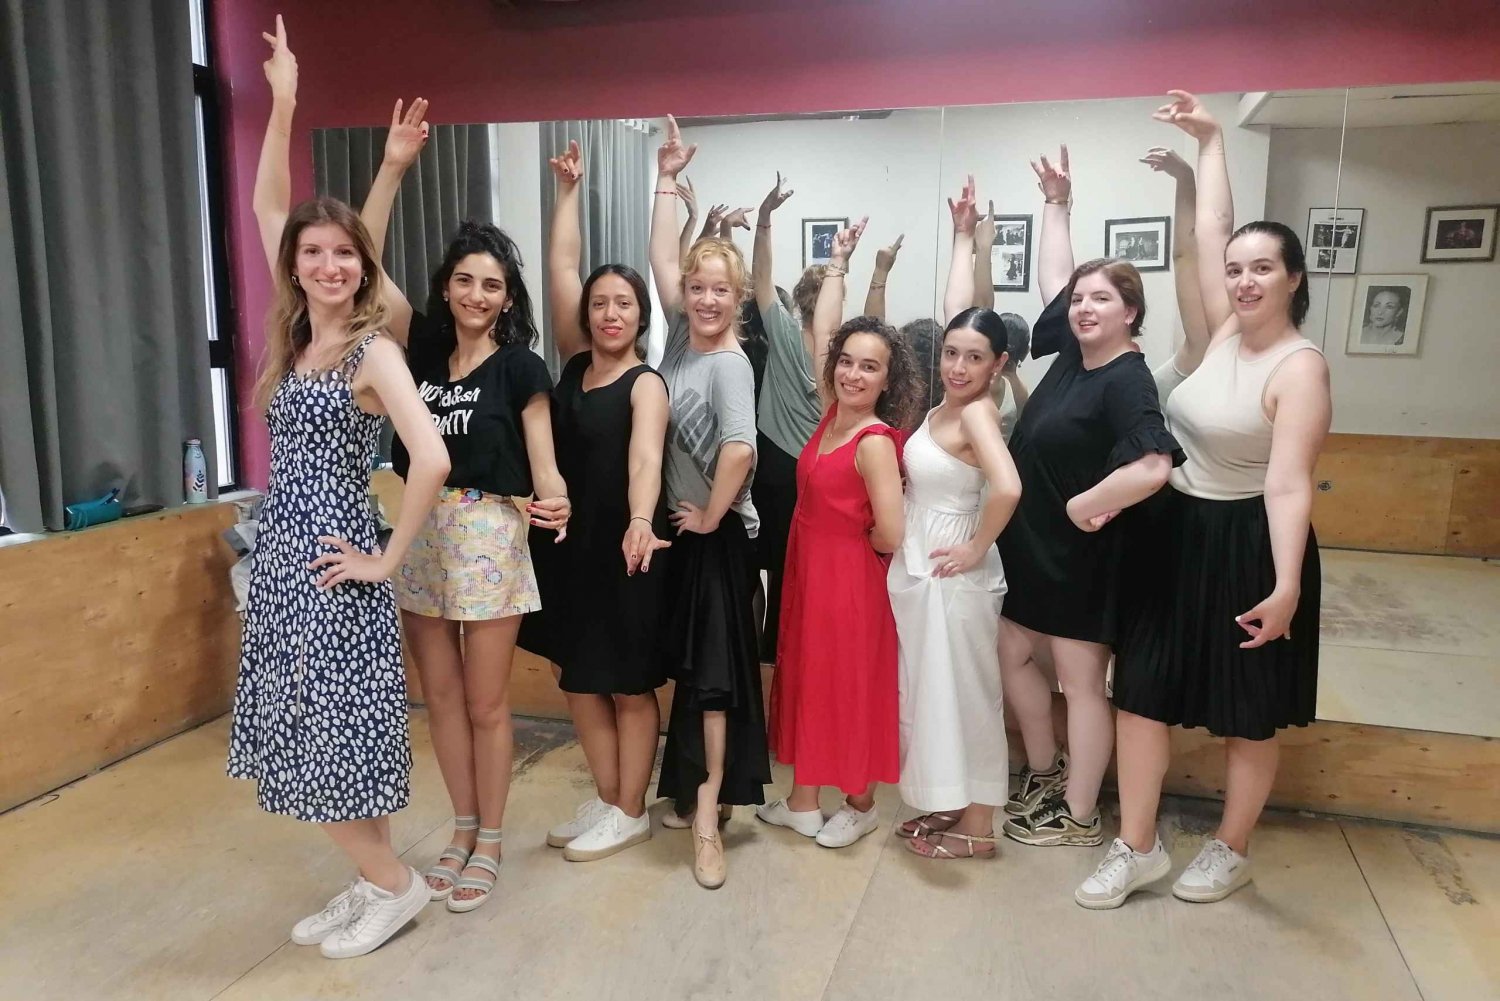 Malaga: doświadczenie w klasie flamenco